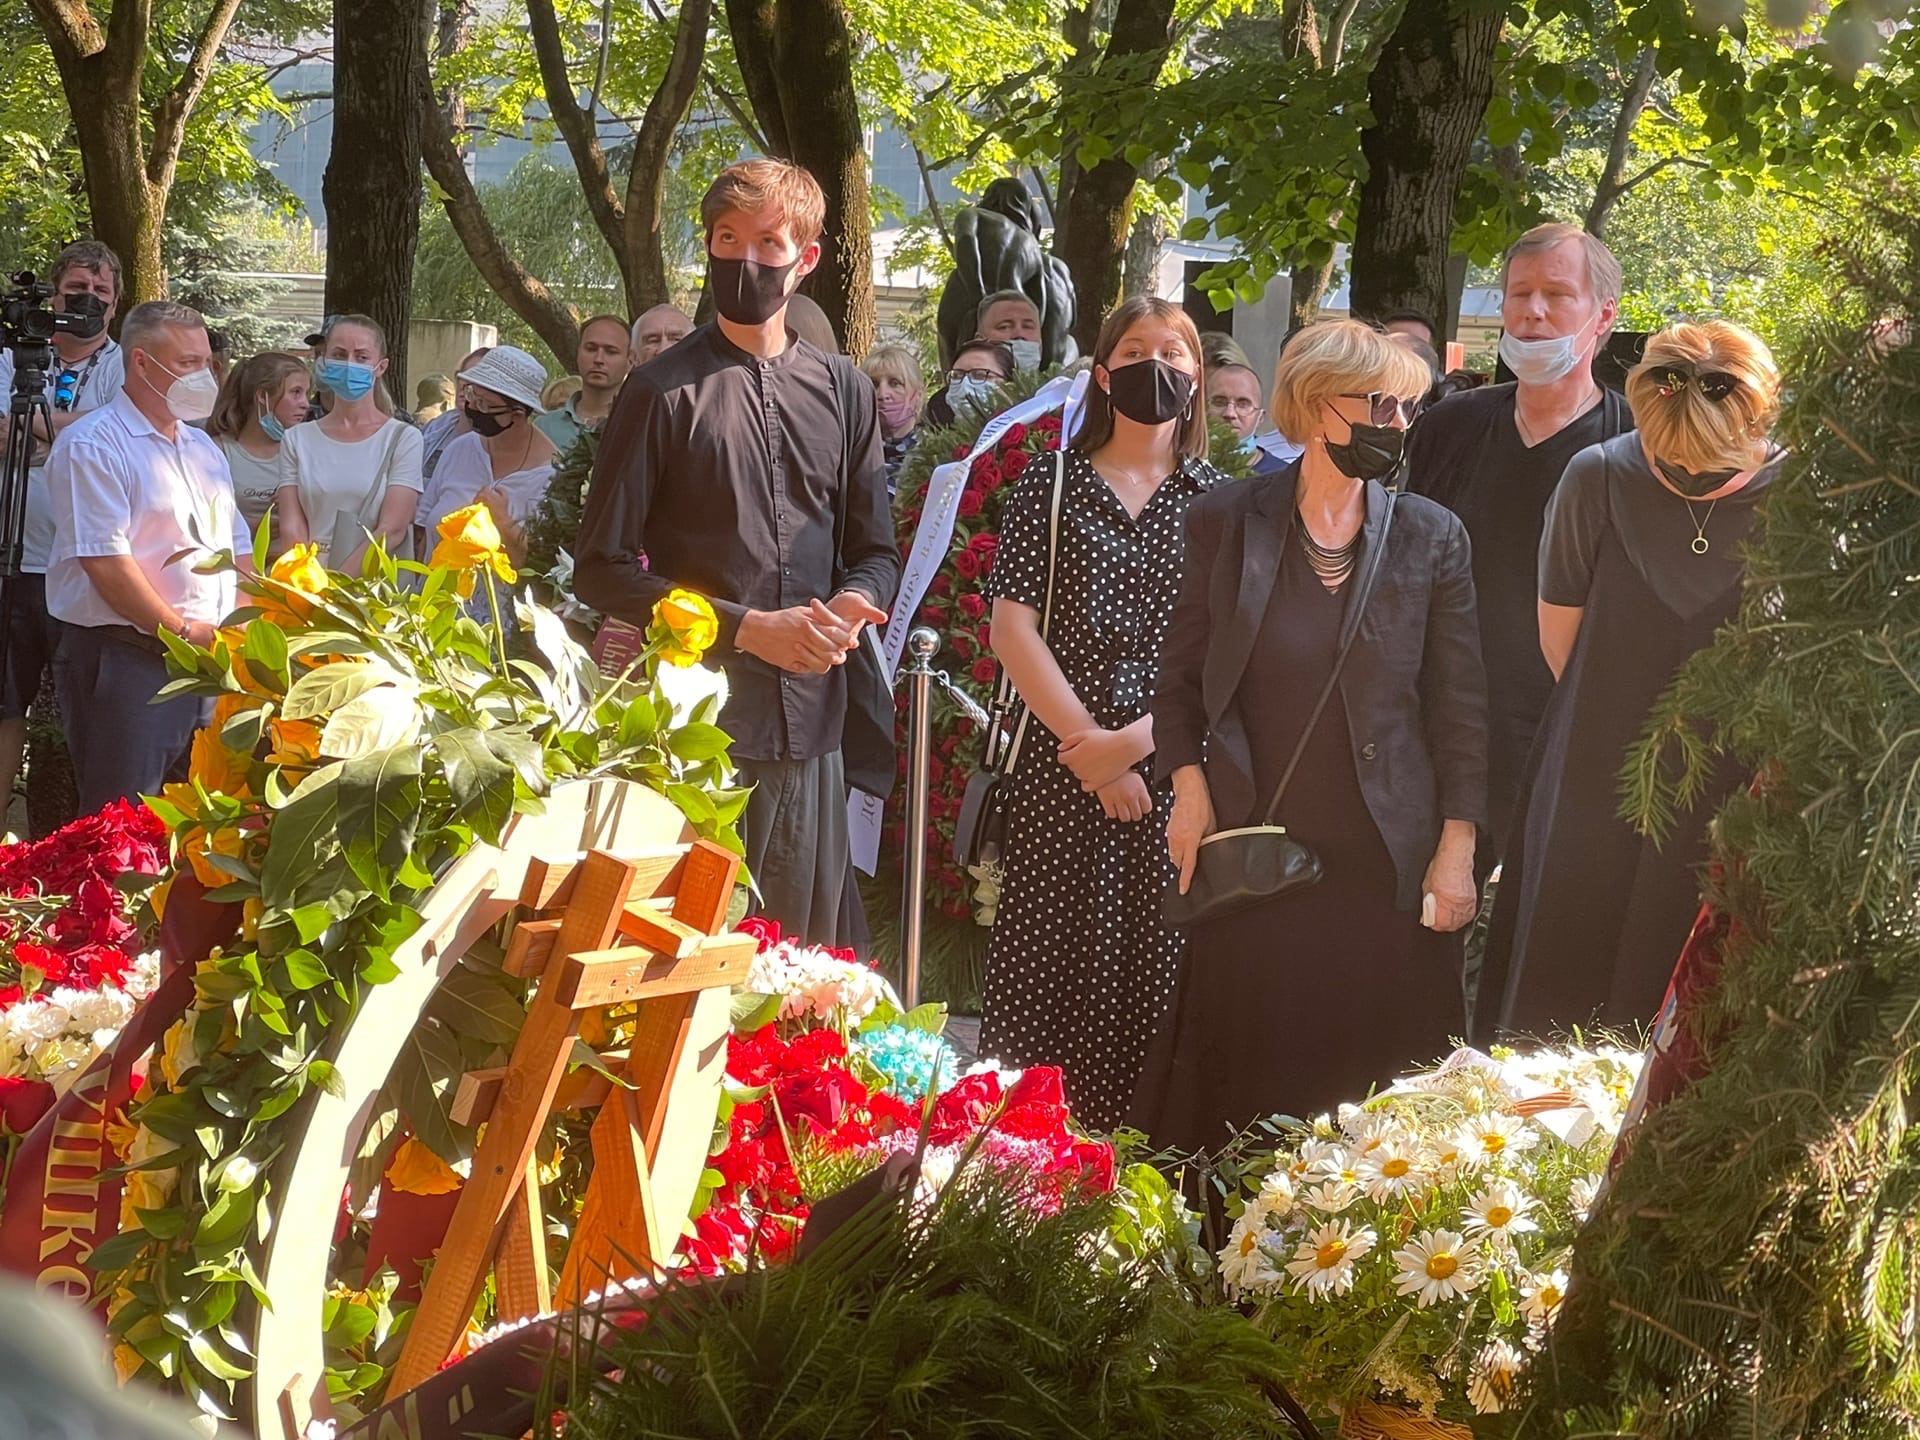 похороны марины малафеевой фото с похорон